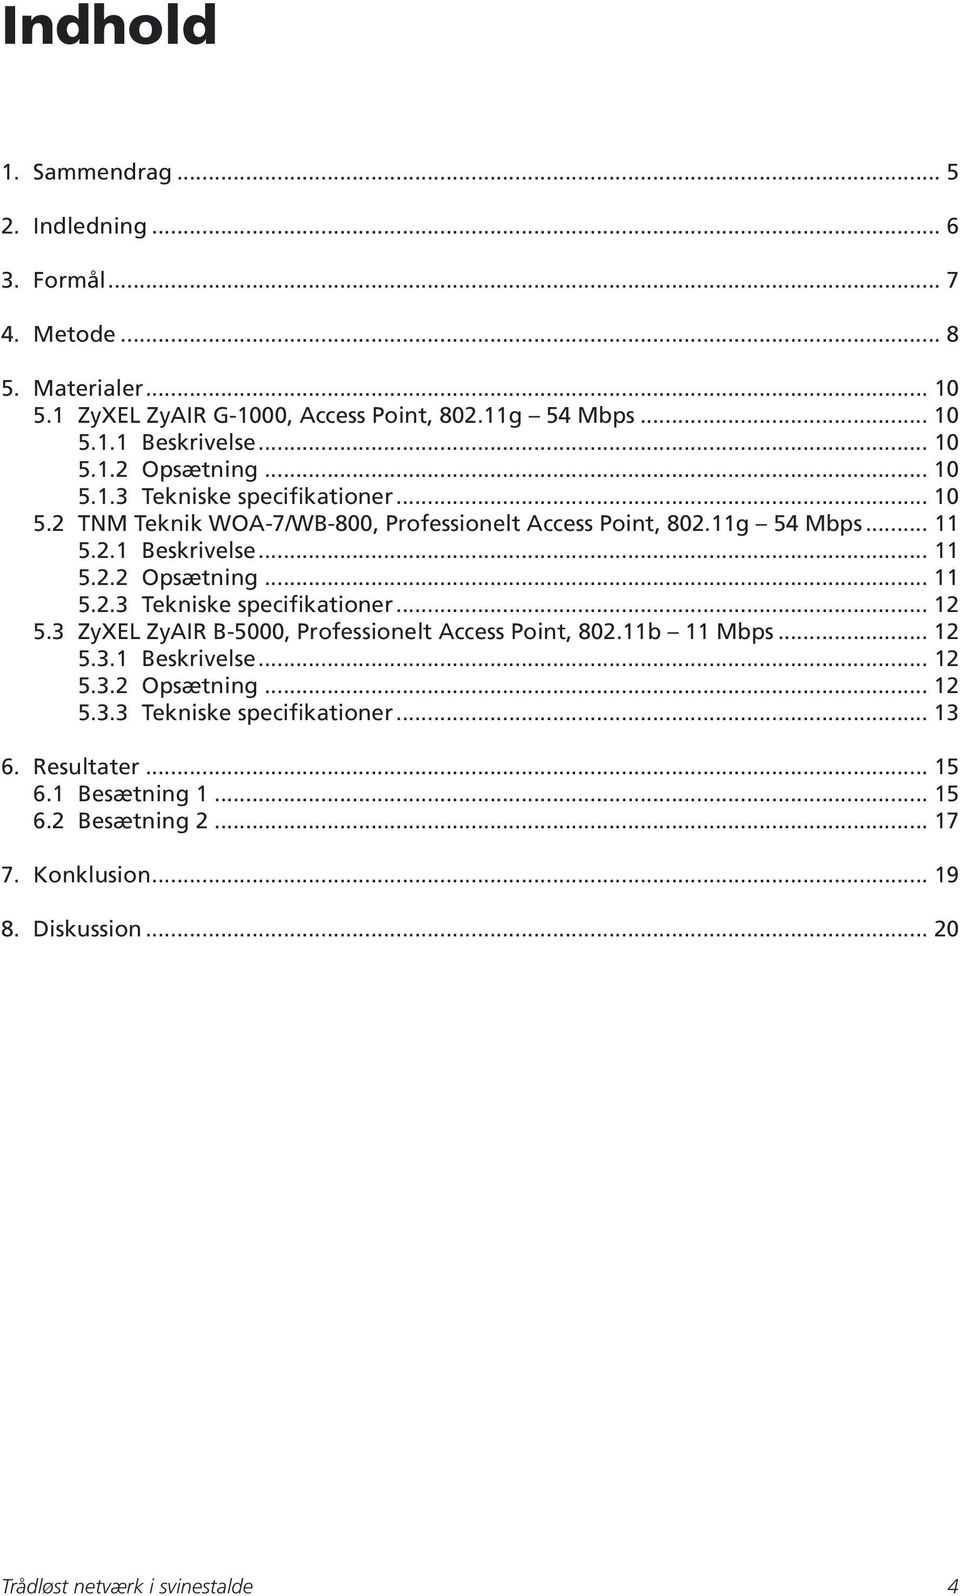 3 ZyXEL ZyAIR B-5000, Professionelt Access Point, 802.11b 11 Mbps... 12 5.3.1 Beskrivelse... 12 5.3.2 Opsætning... 12 5.3.3 Tekniske specifikationer... 13 6. Resultater.